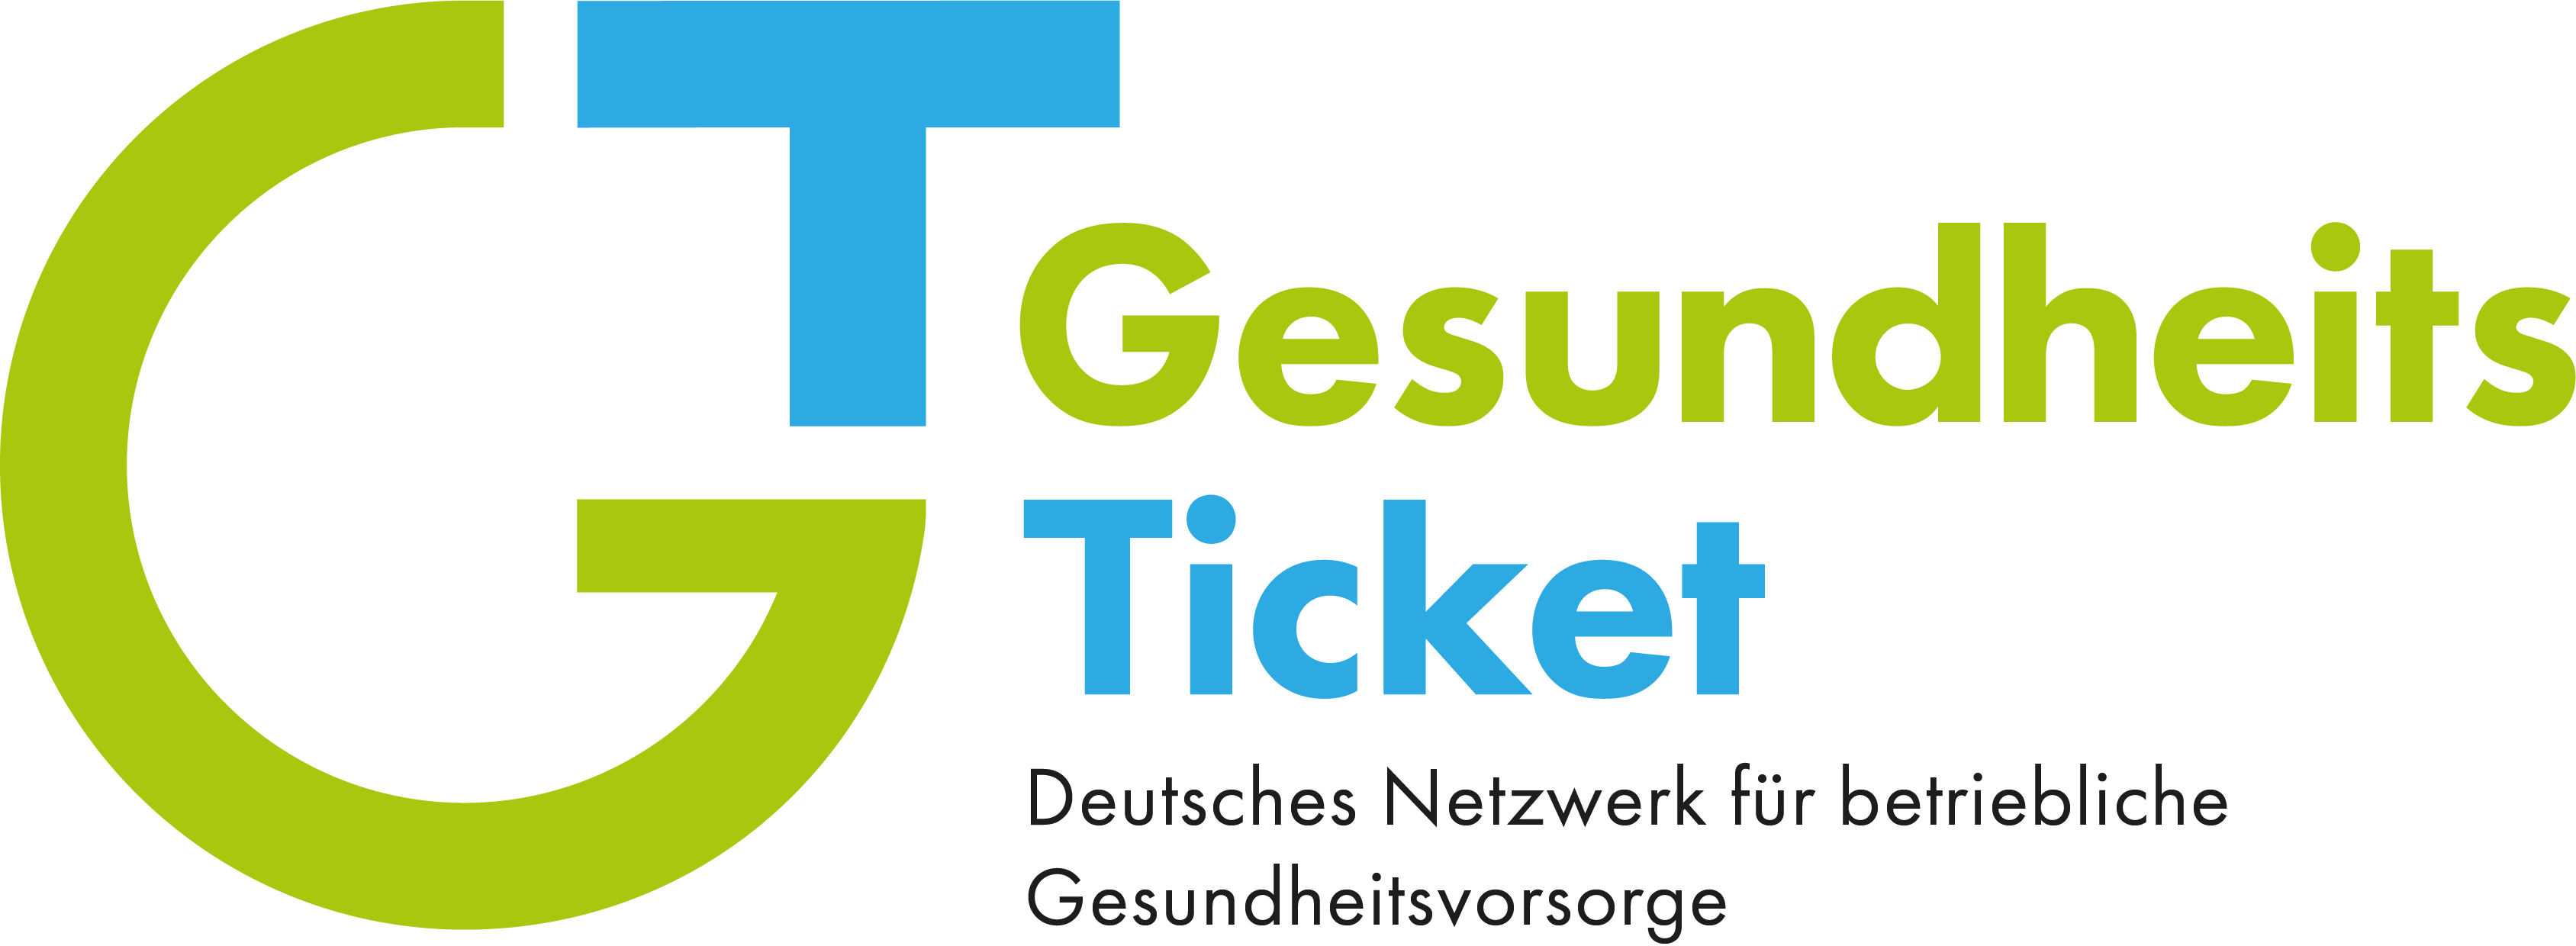 GesundheitsTicket GmbH - Deutsches Netzwerk für betriebliche Gesundheitsvorsorge Logo